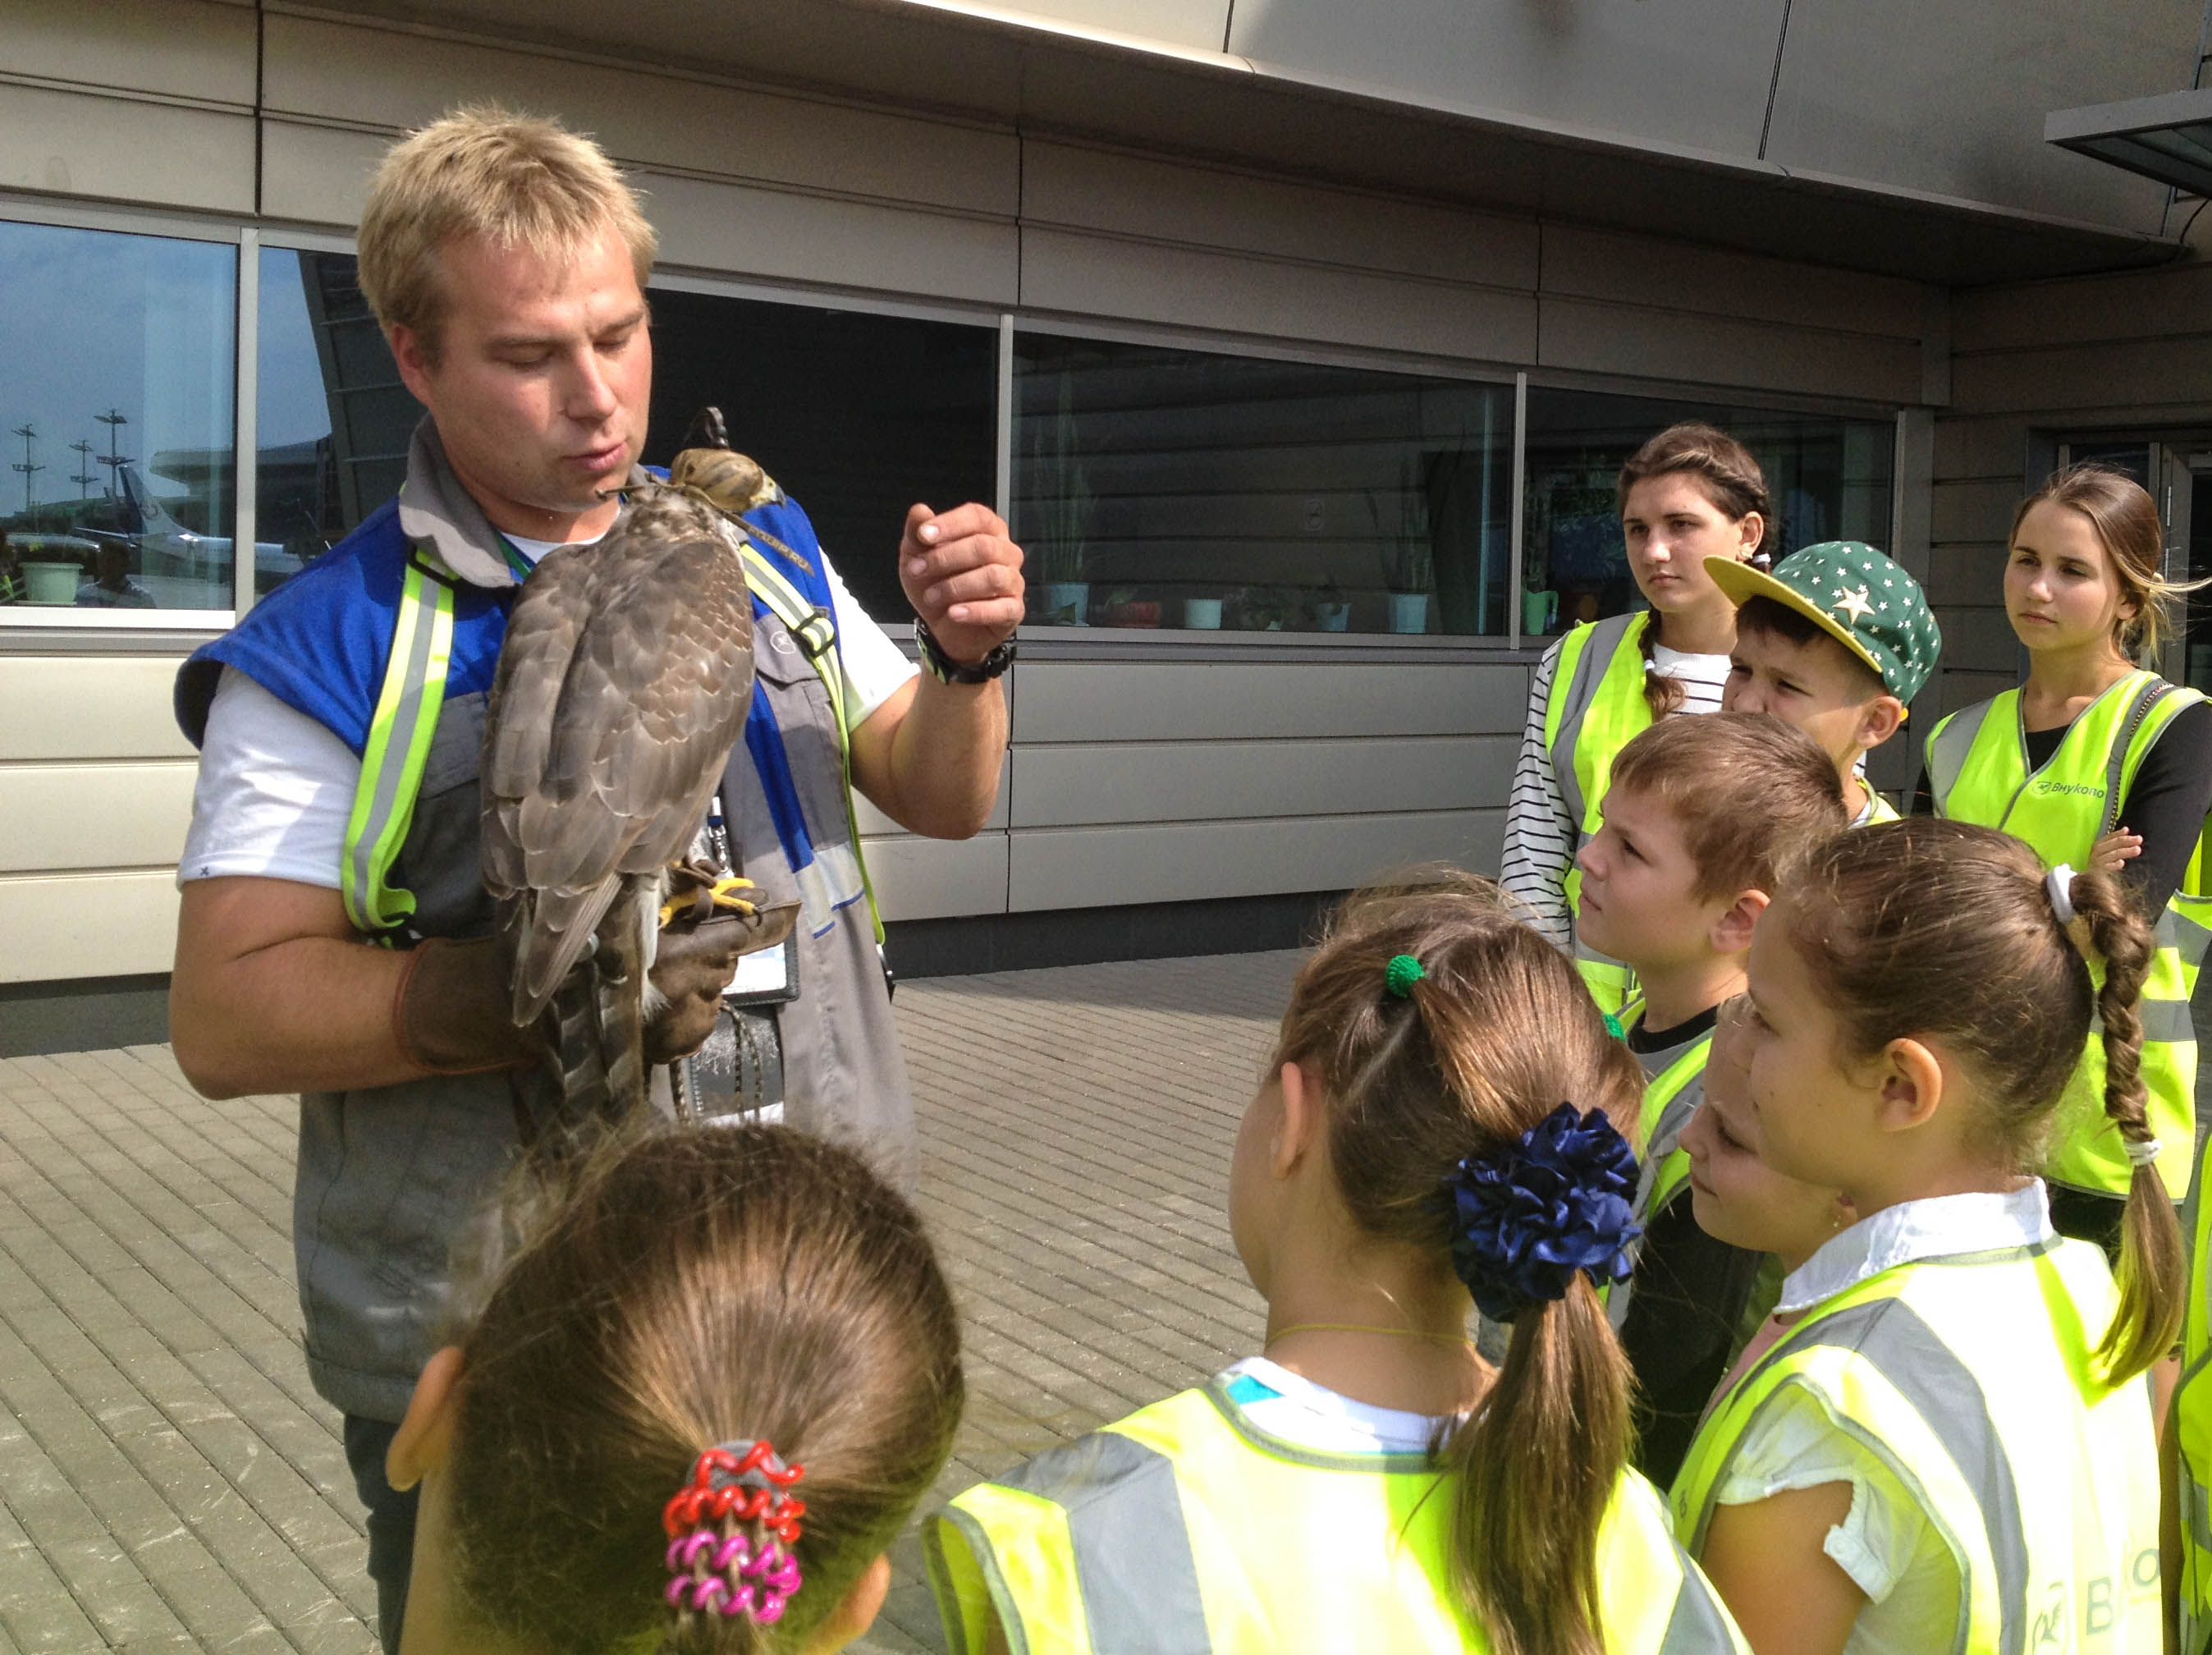 Международный аэропорт Внуково провел экскурсию для детей сотрудников воздушной гавани | Международный аэропорт Внуково